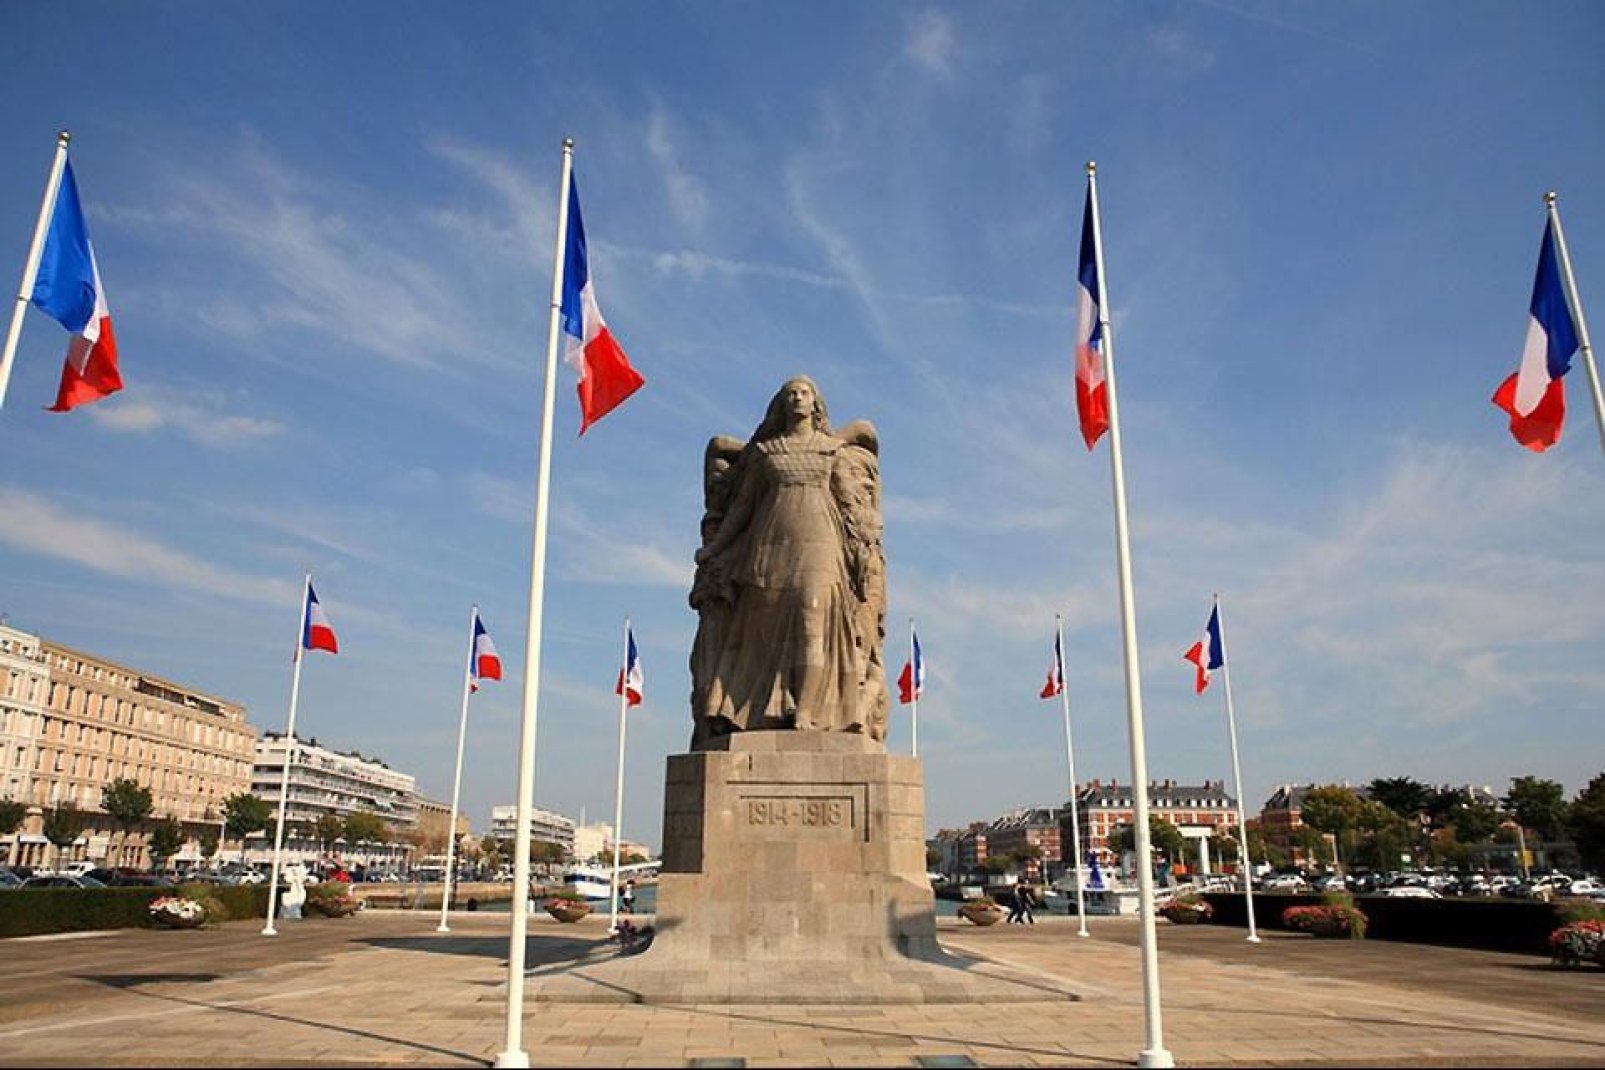 El centro de la ciudad de Le Havre fue destruido durante la Segunda Guerra Mundial y se reconstruyó por completo de 1945 a 1964. En la actualidad ha sido declarado patrimonio mundial de la Unesco.